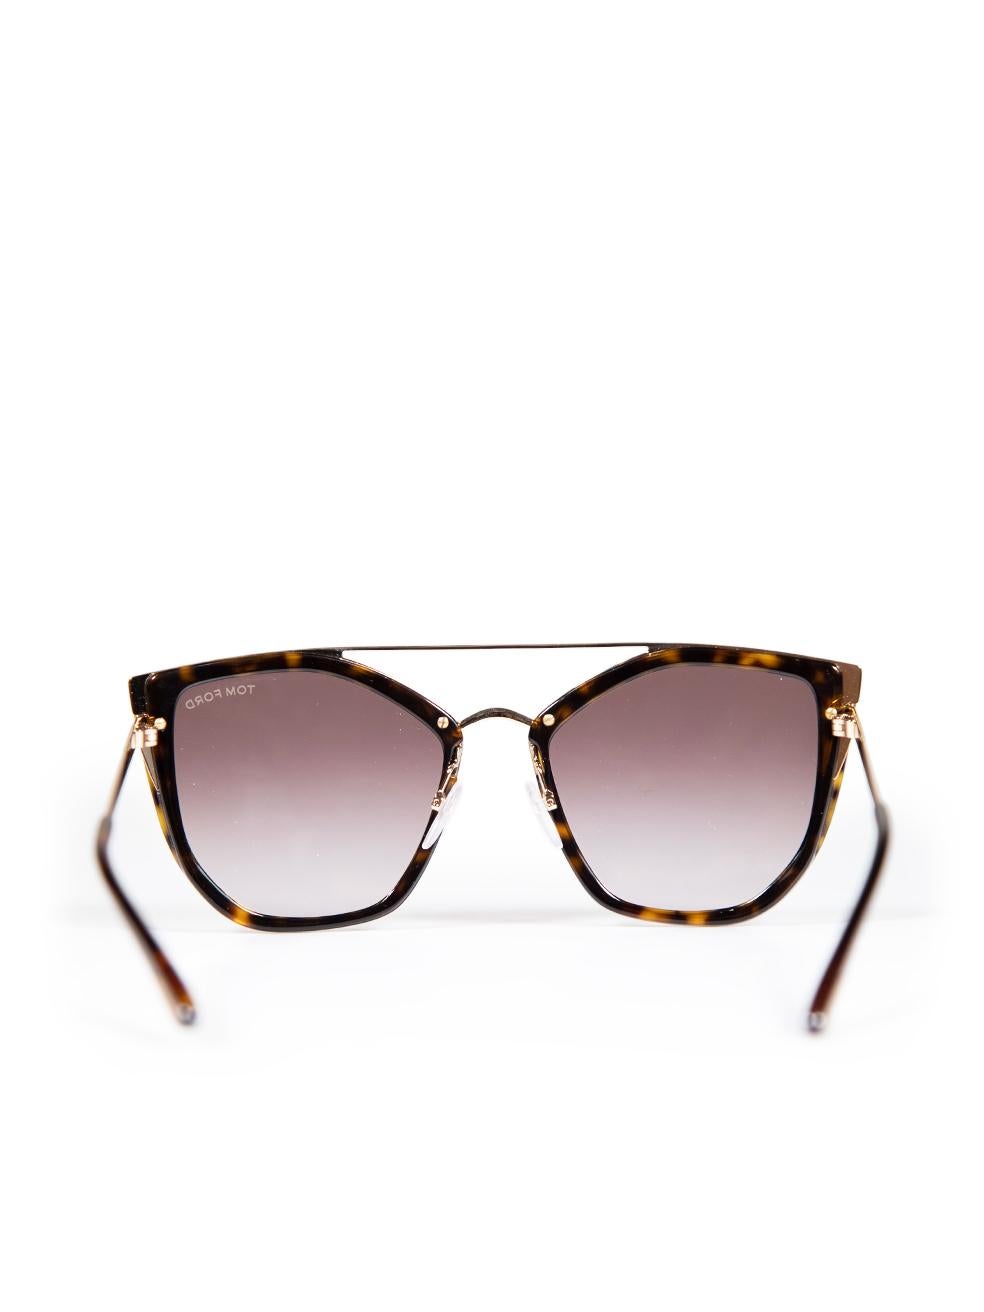 Women's Tom Ford Dark Havana Cat Eye Sunglasses For Sale